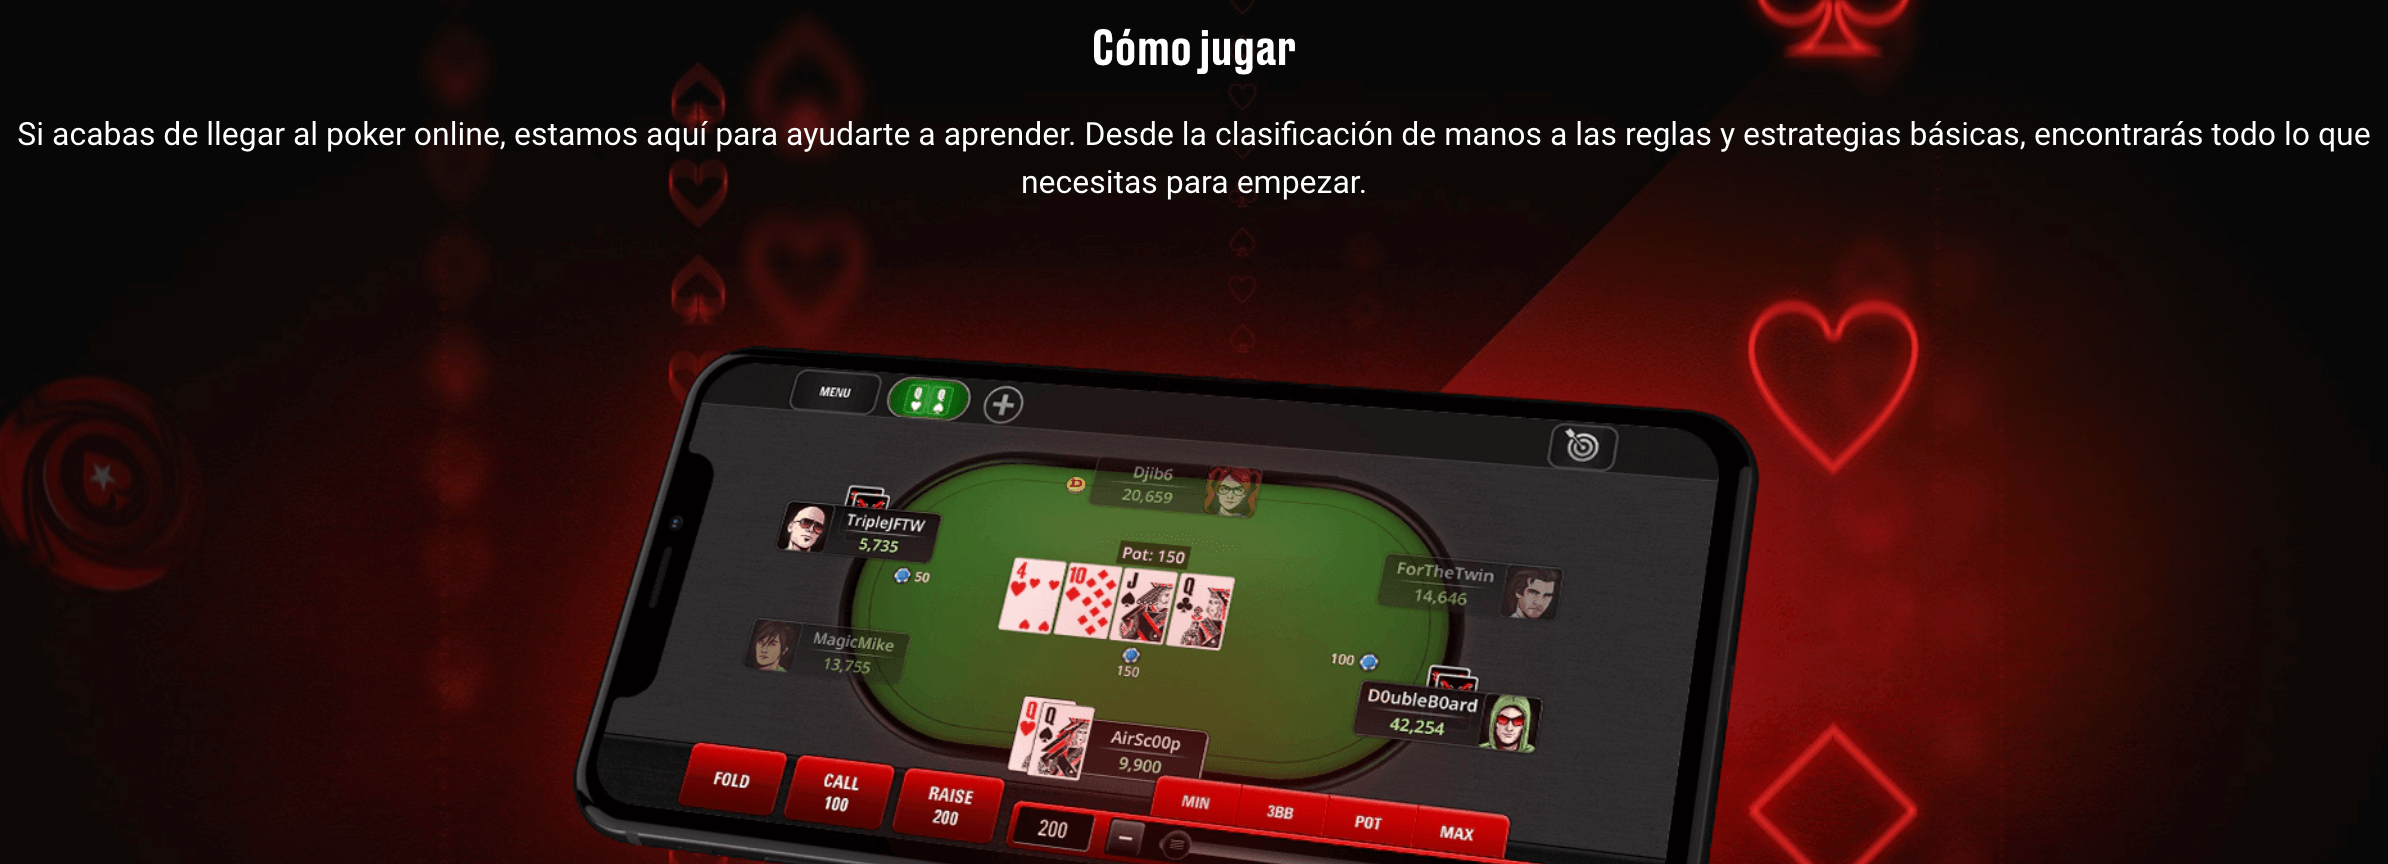 Pokerstars póker en vivo en España